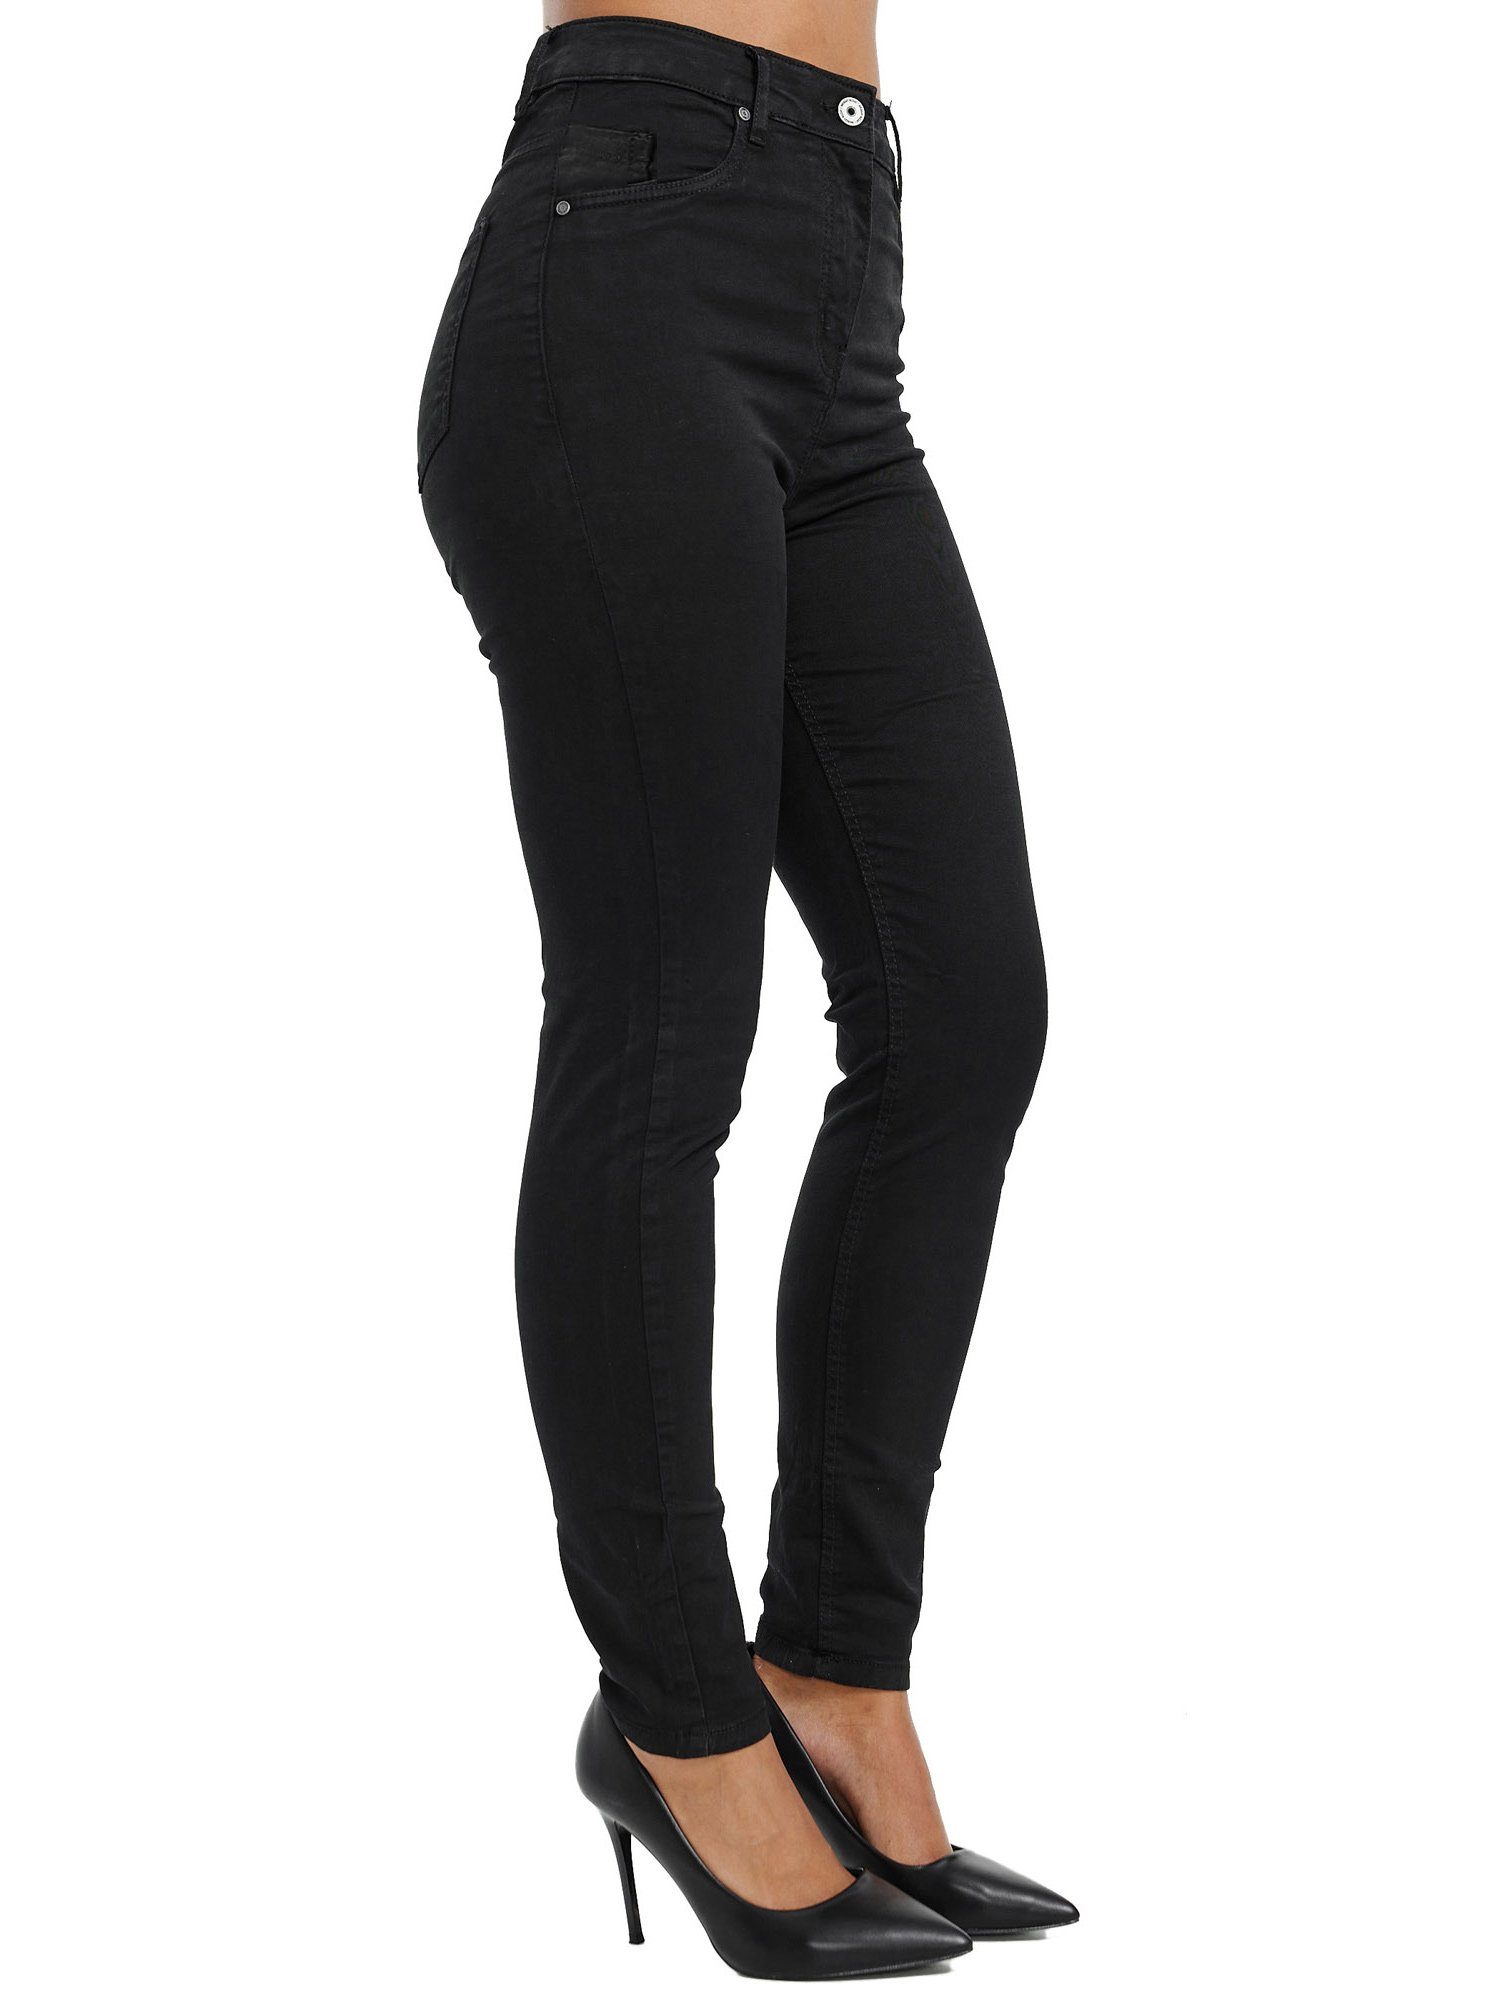 Tazzio Skinny-fit-Jeans F103 Rise Damen schwarz Jeanshose High